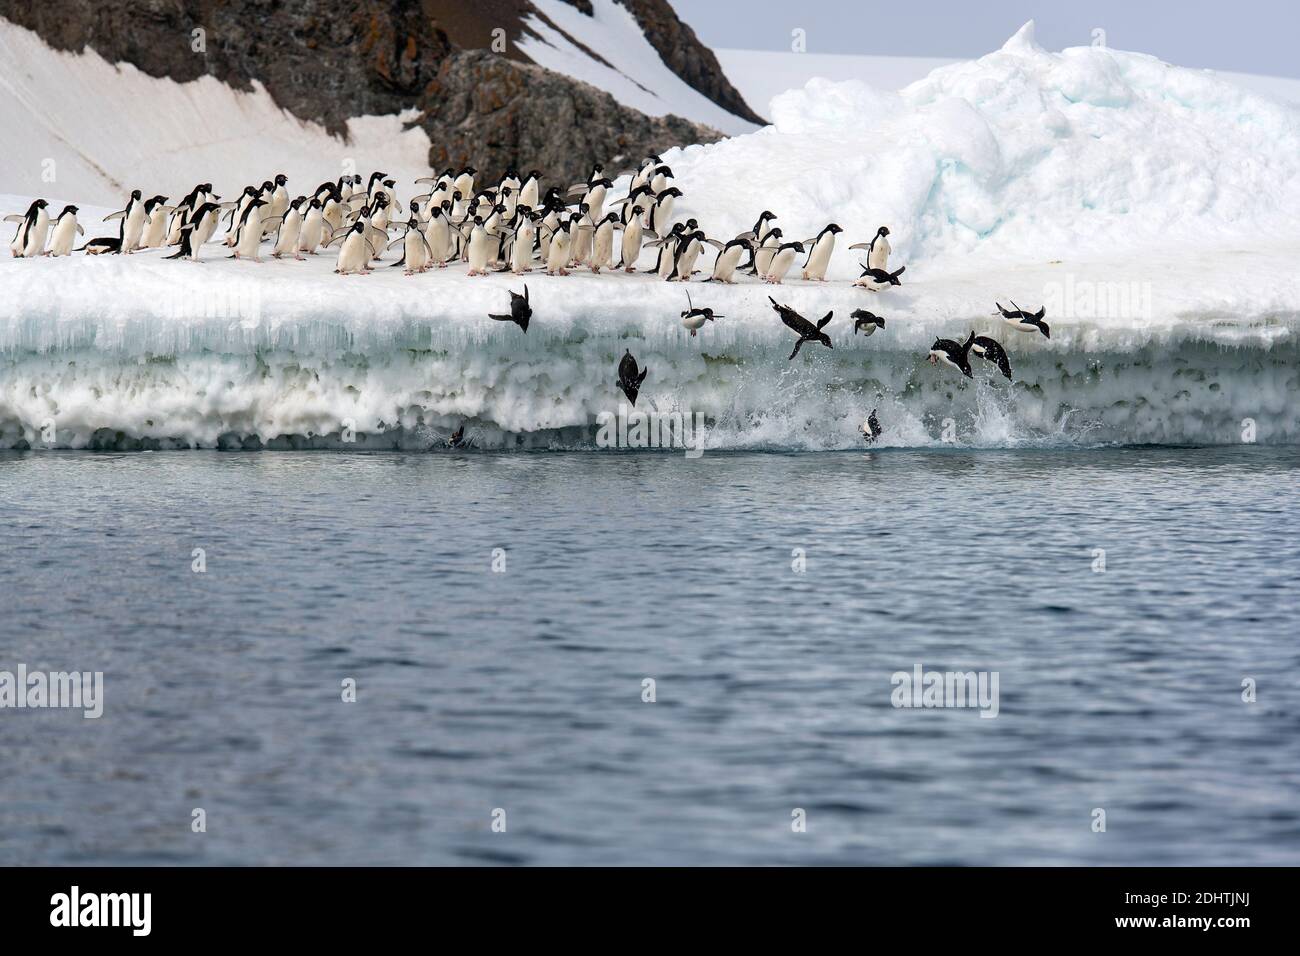 Les pingouins d'Adelie (Pygoscelis antartica) se jettent dans l'océan pour chasser les poissons. Kinnes Cove, île Paulet, Antarctique. Banque D'Images